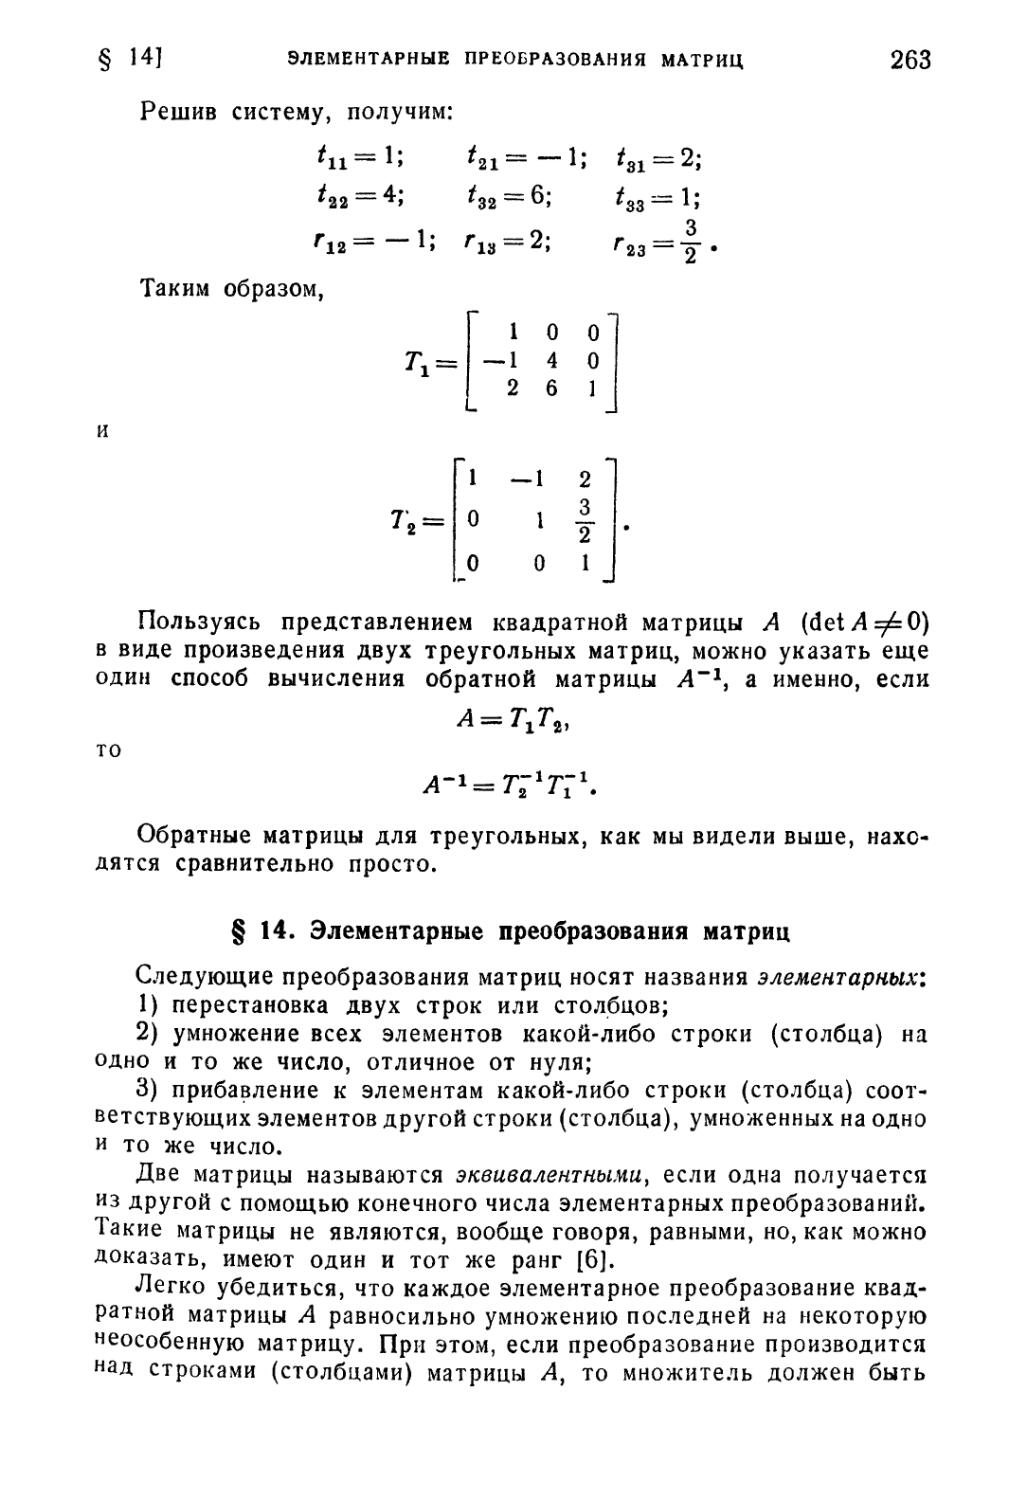 § 14. Элементарные преобразования матриц